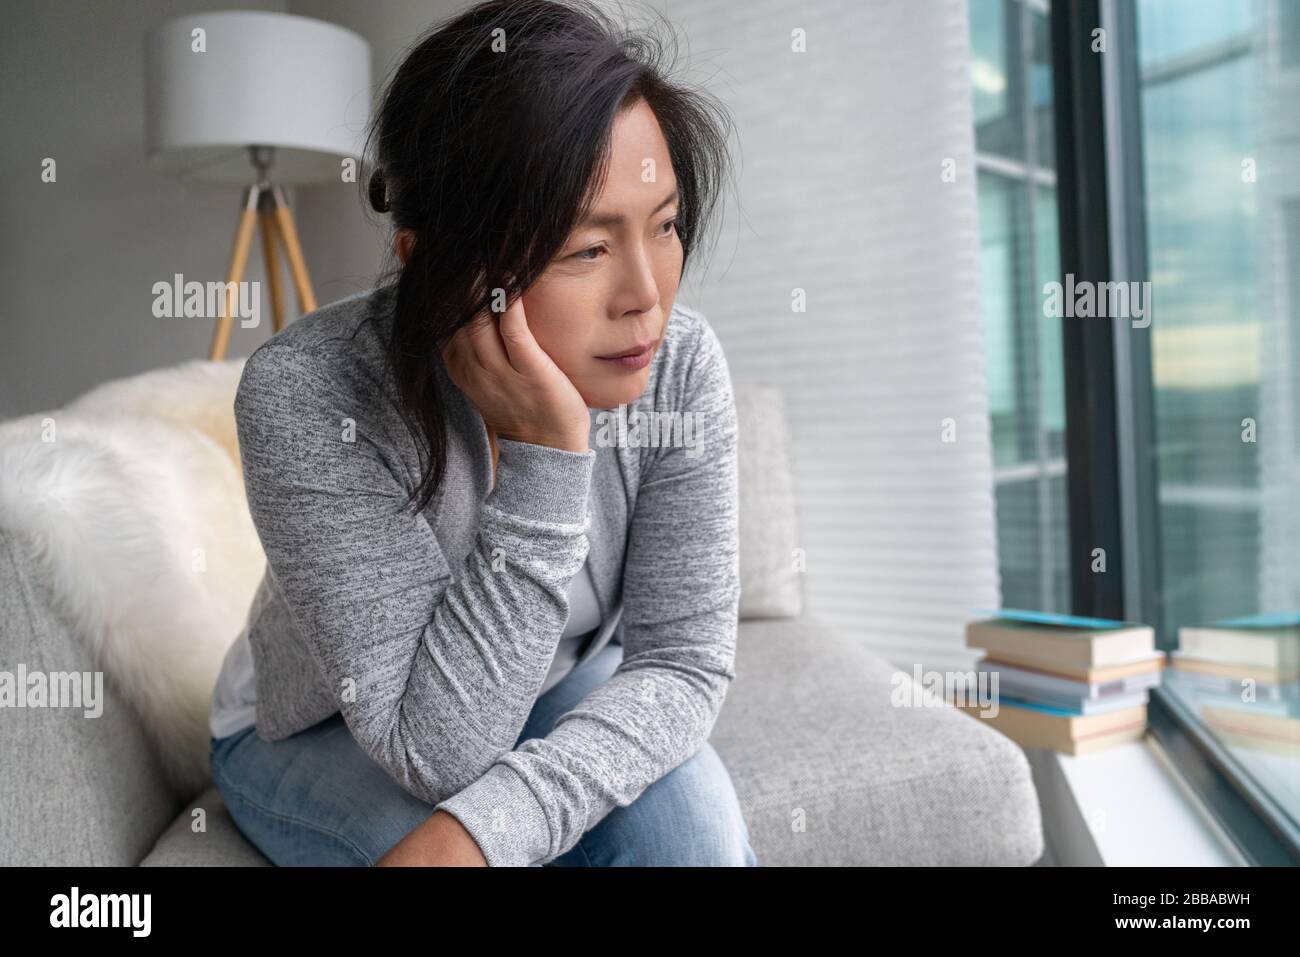 Mujer asiática madura triste sola en el hogar aislamiento de uno mismo cuarentena para COVID-19 Prevención del distanciamiento social del Coronavirus. Salud mental, ansiedad deprimida pensamiento de la señora China mayor. Foto de stock